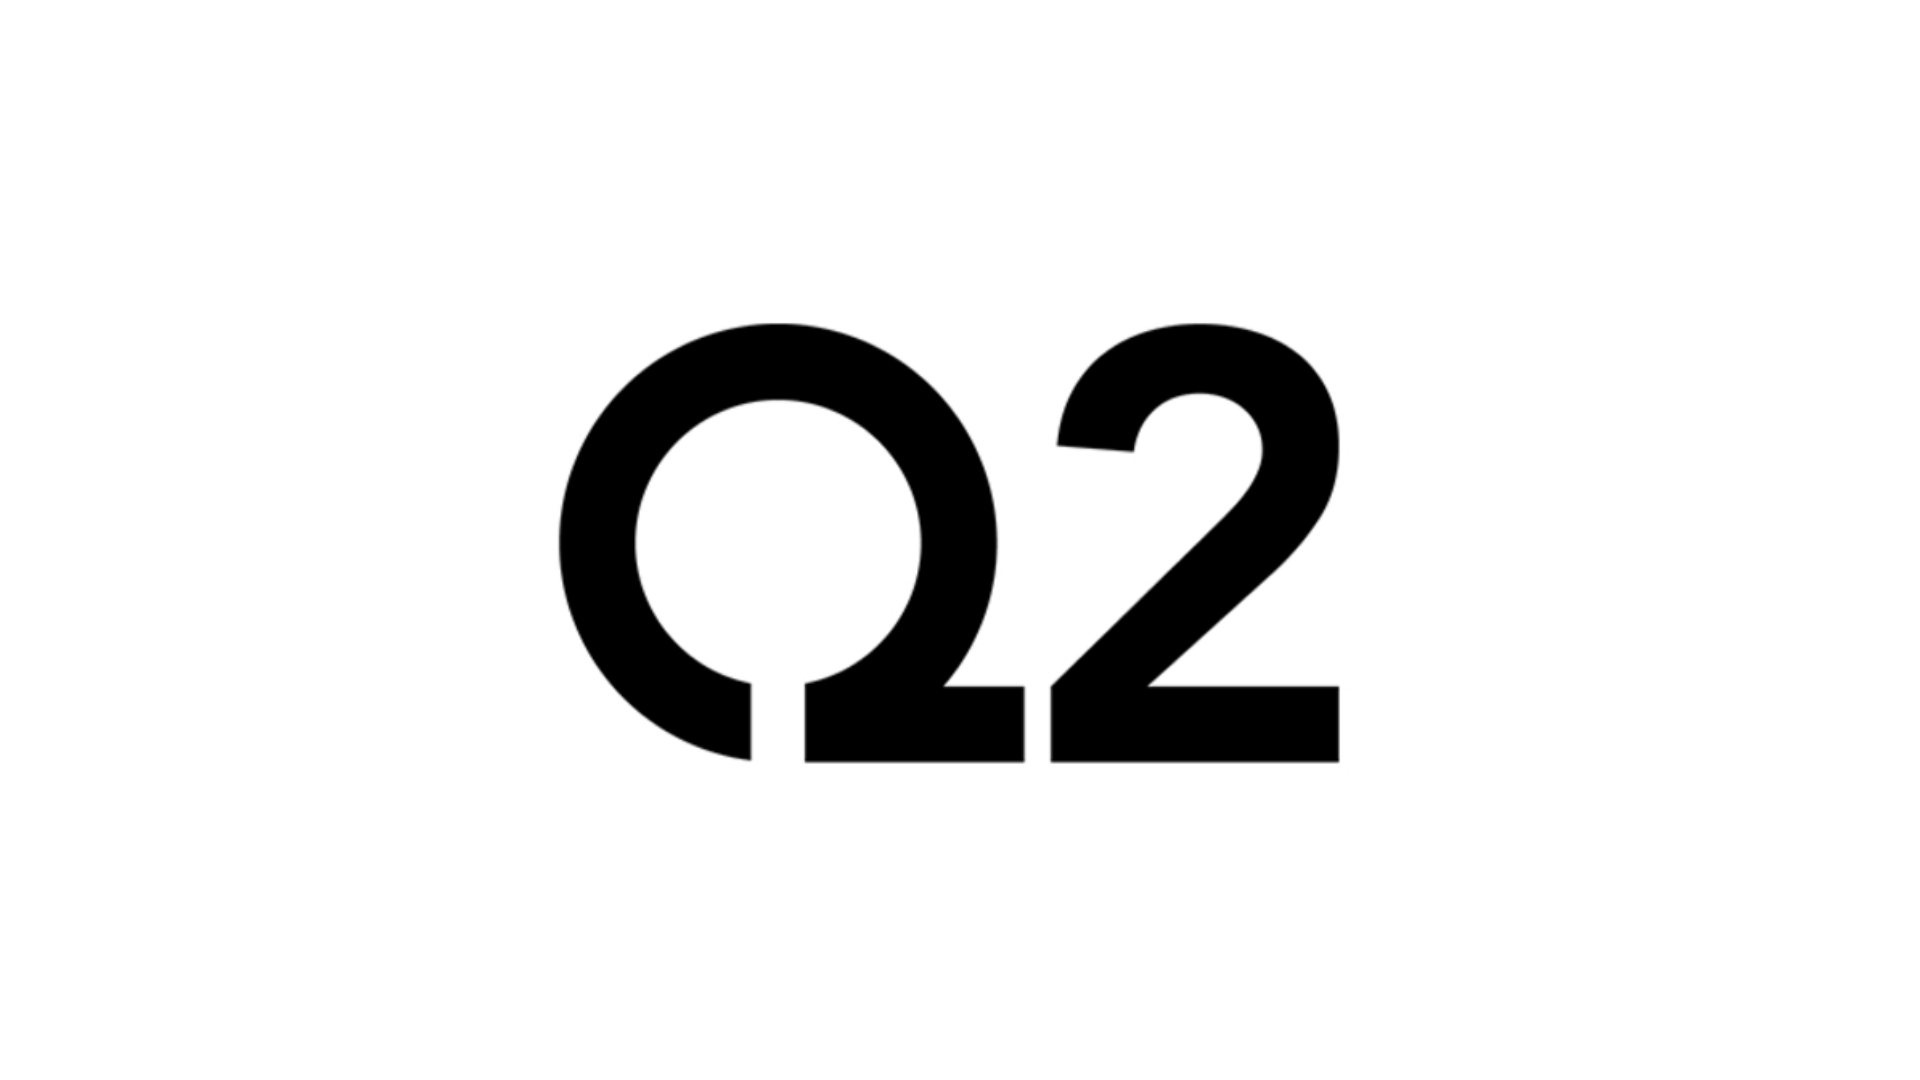 Q2 banking